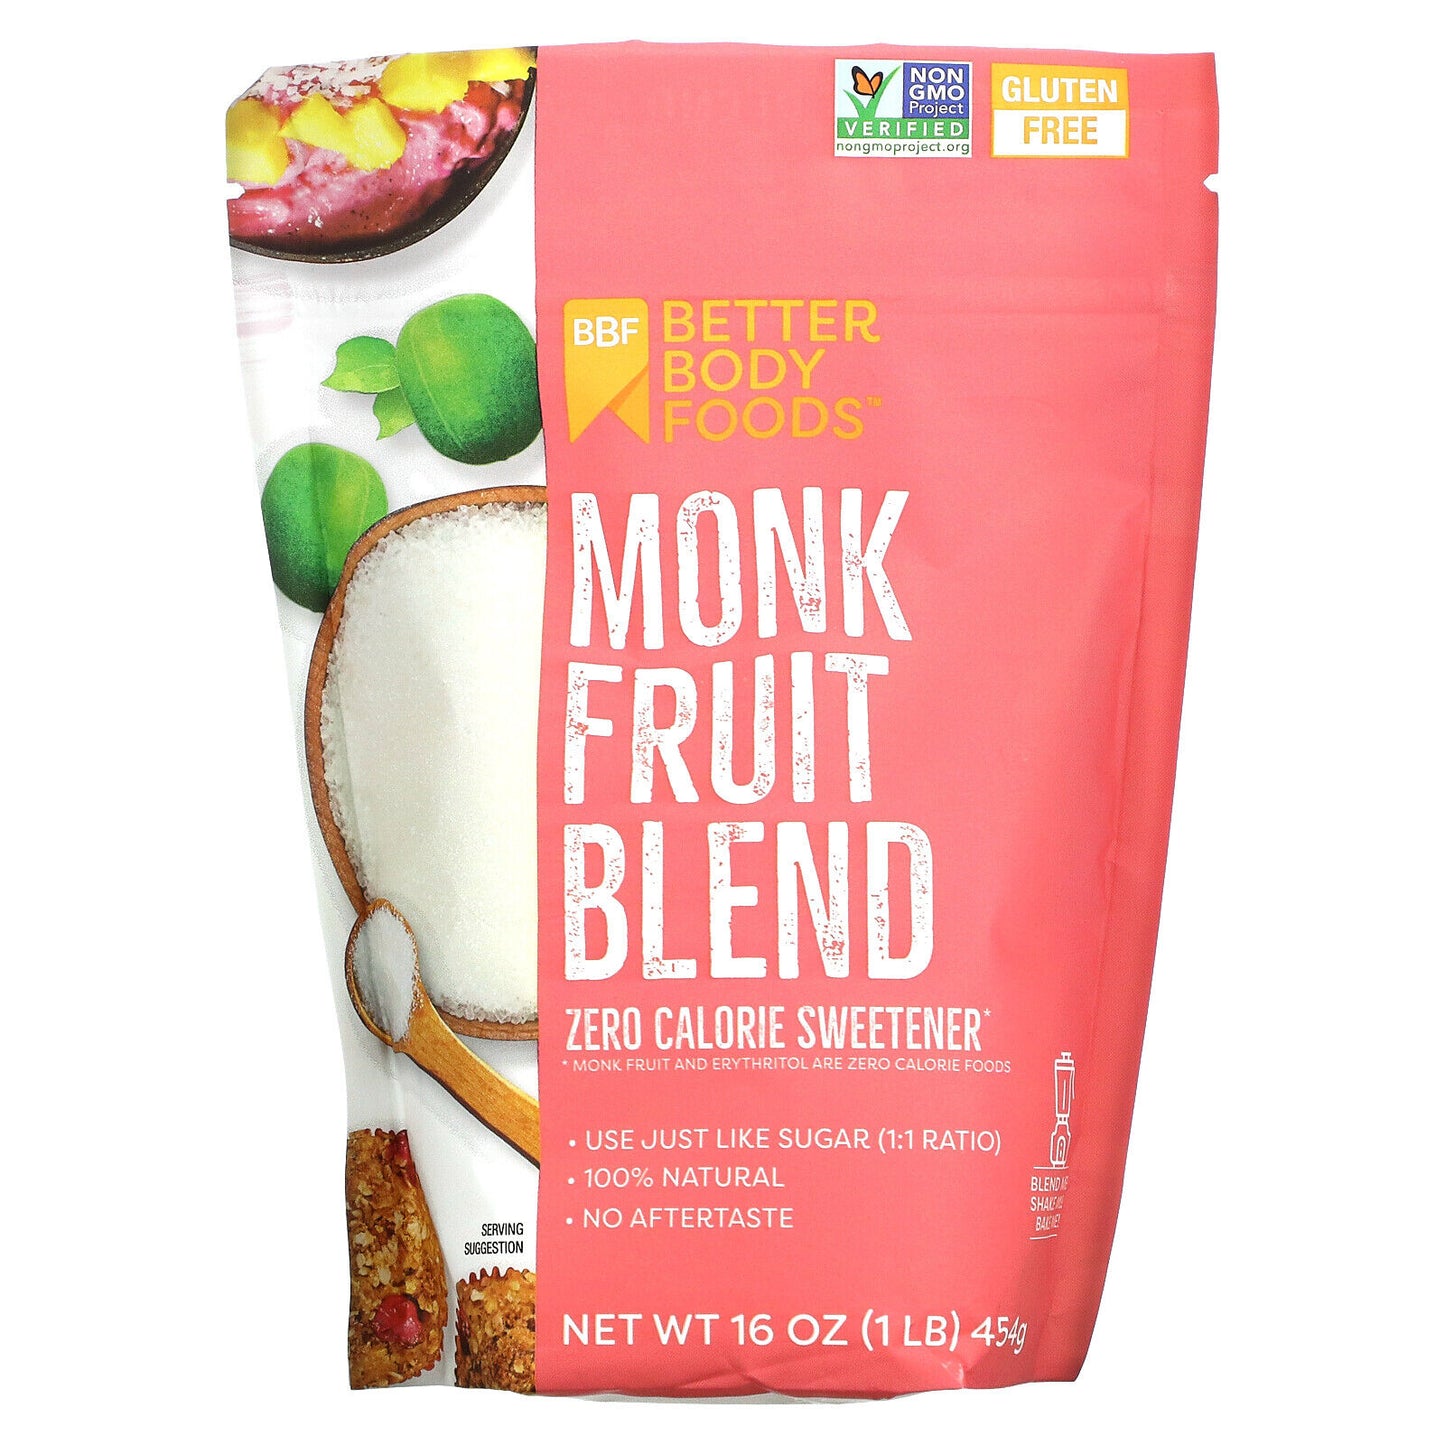 Monk Frutit Blend 454g - Gluten Free